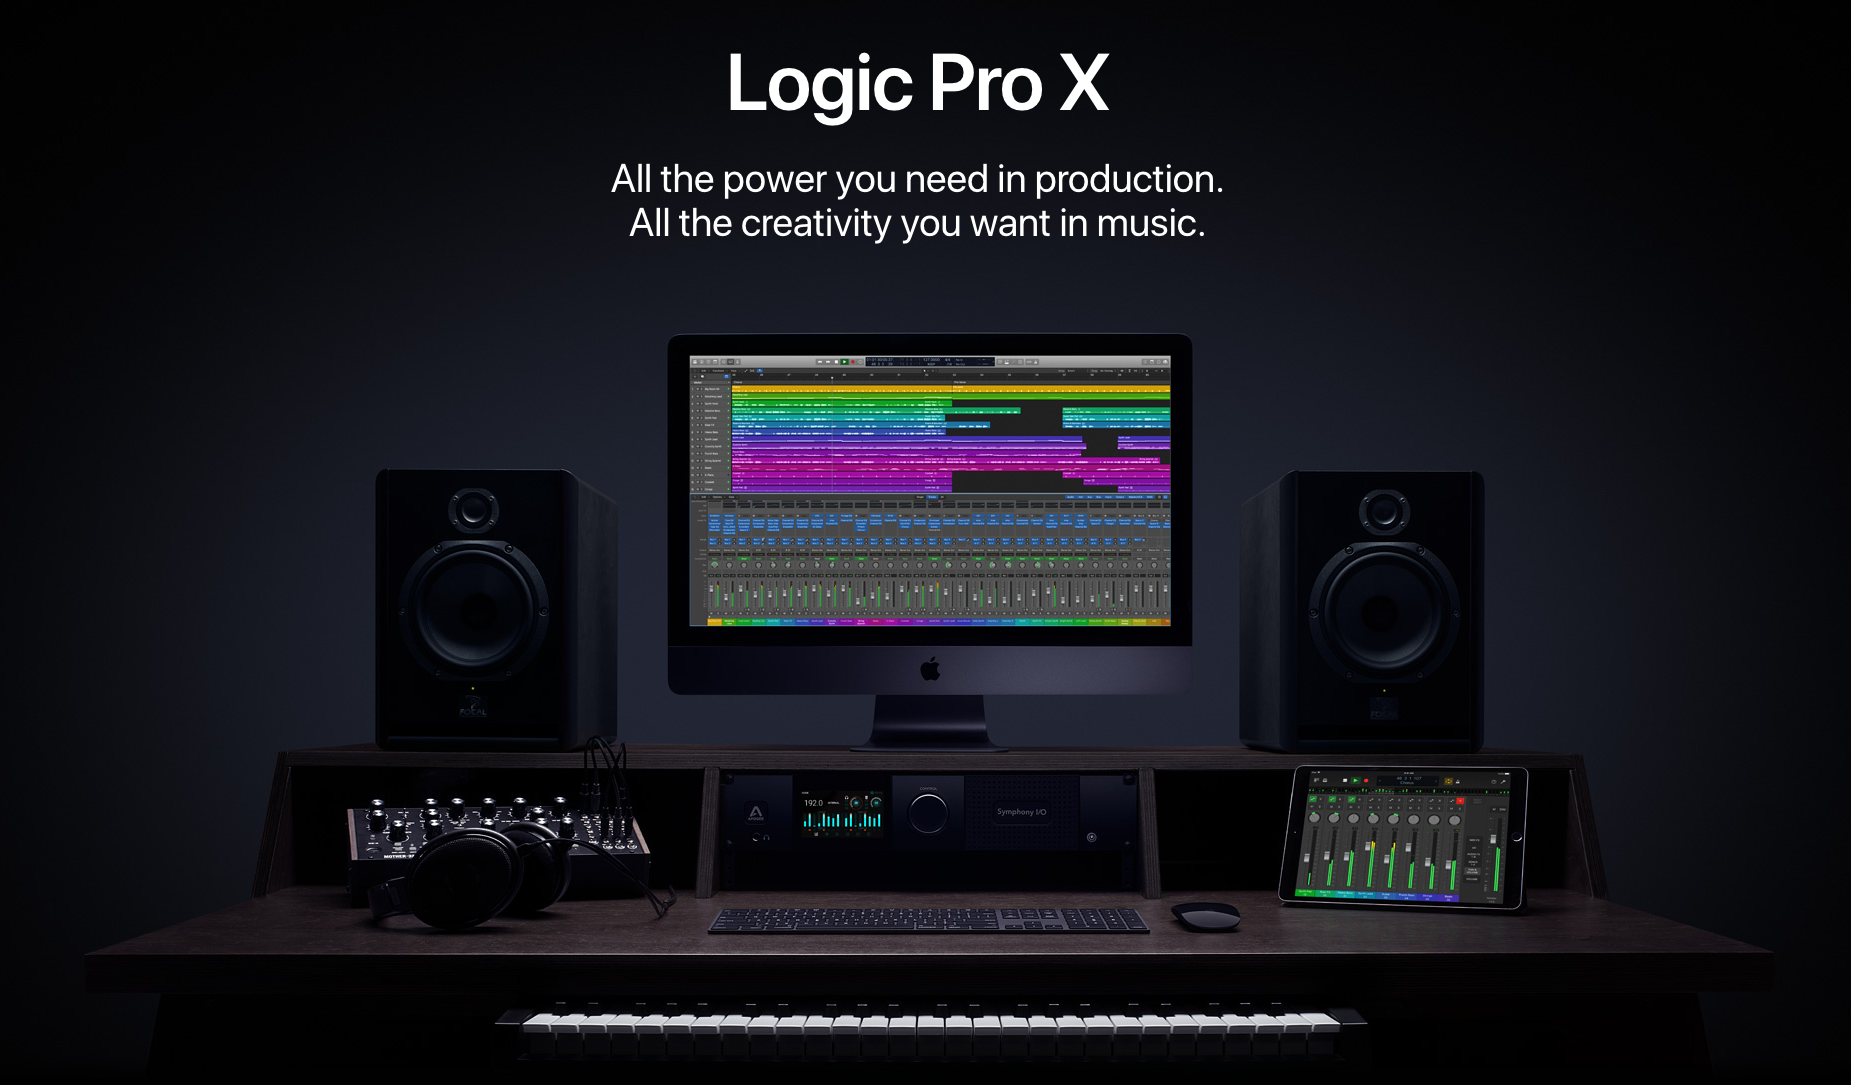 logic pro x free download 2019